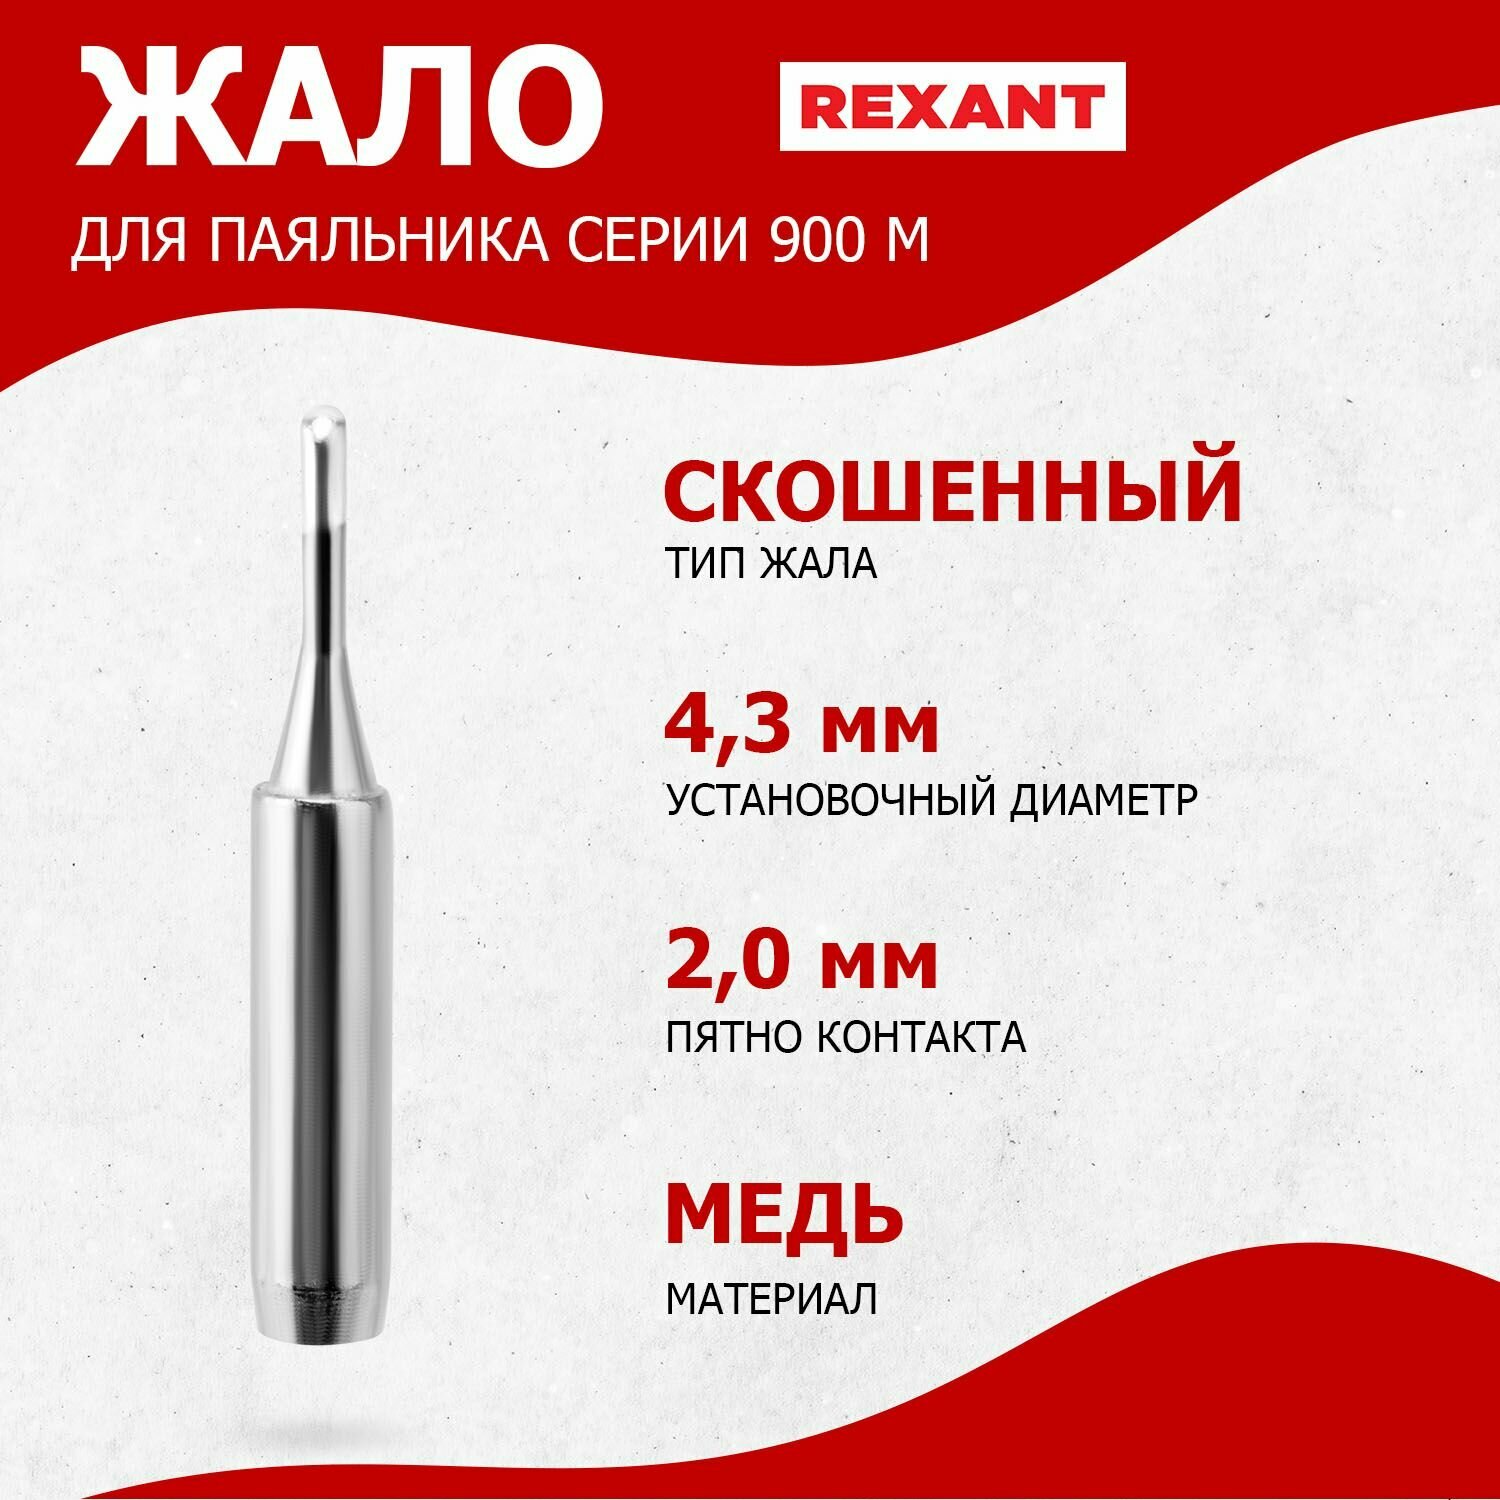 Долговечное жало для паяльника REXANT скошенного типа (2 мм) диаметр 4.3 мм